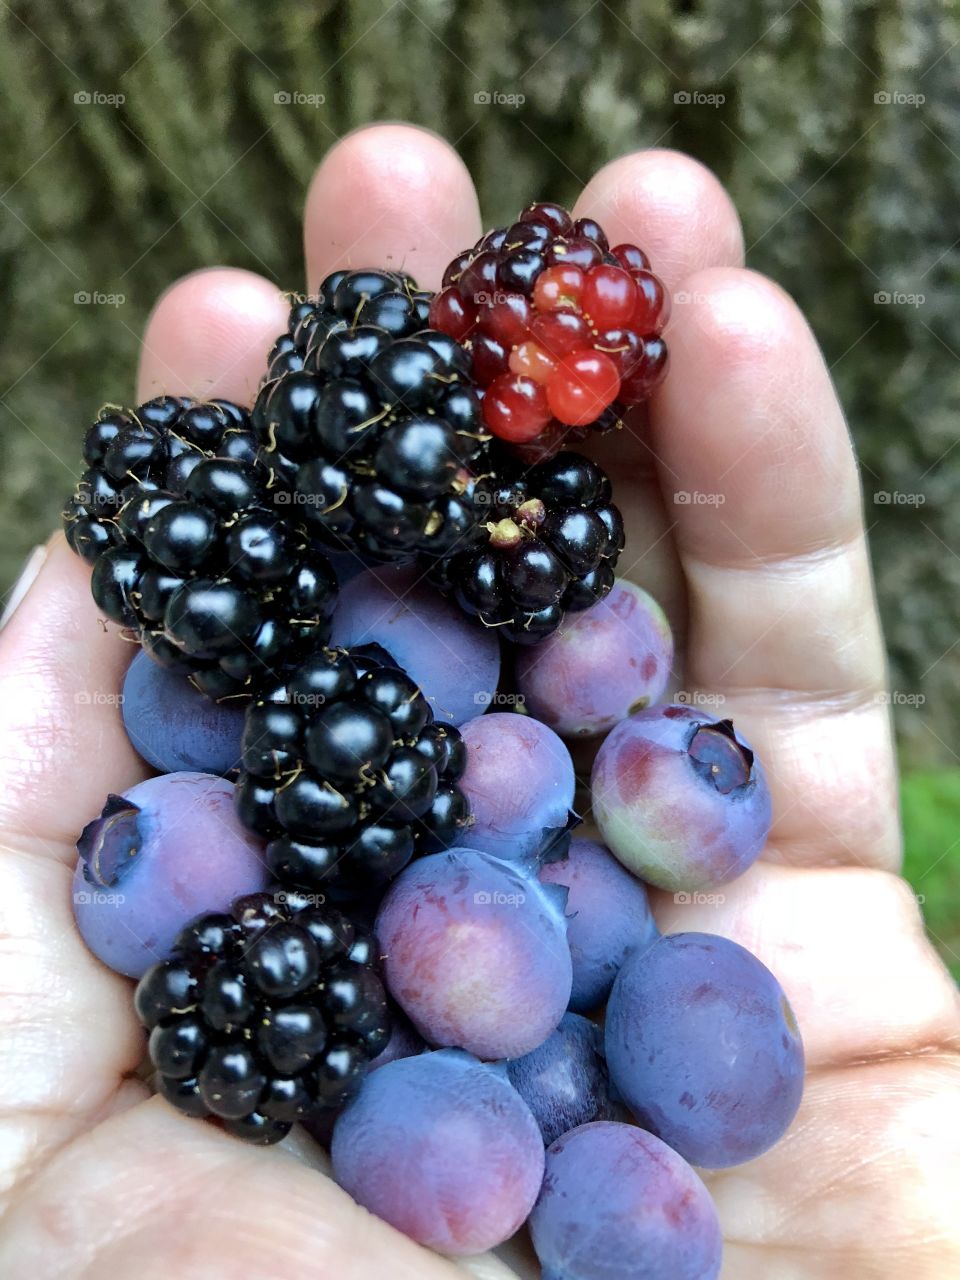 Ah! The lovely bounty of nature’s larders- heirloom harvesting has begun! Juicy, sweet, healthy snacking! 